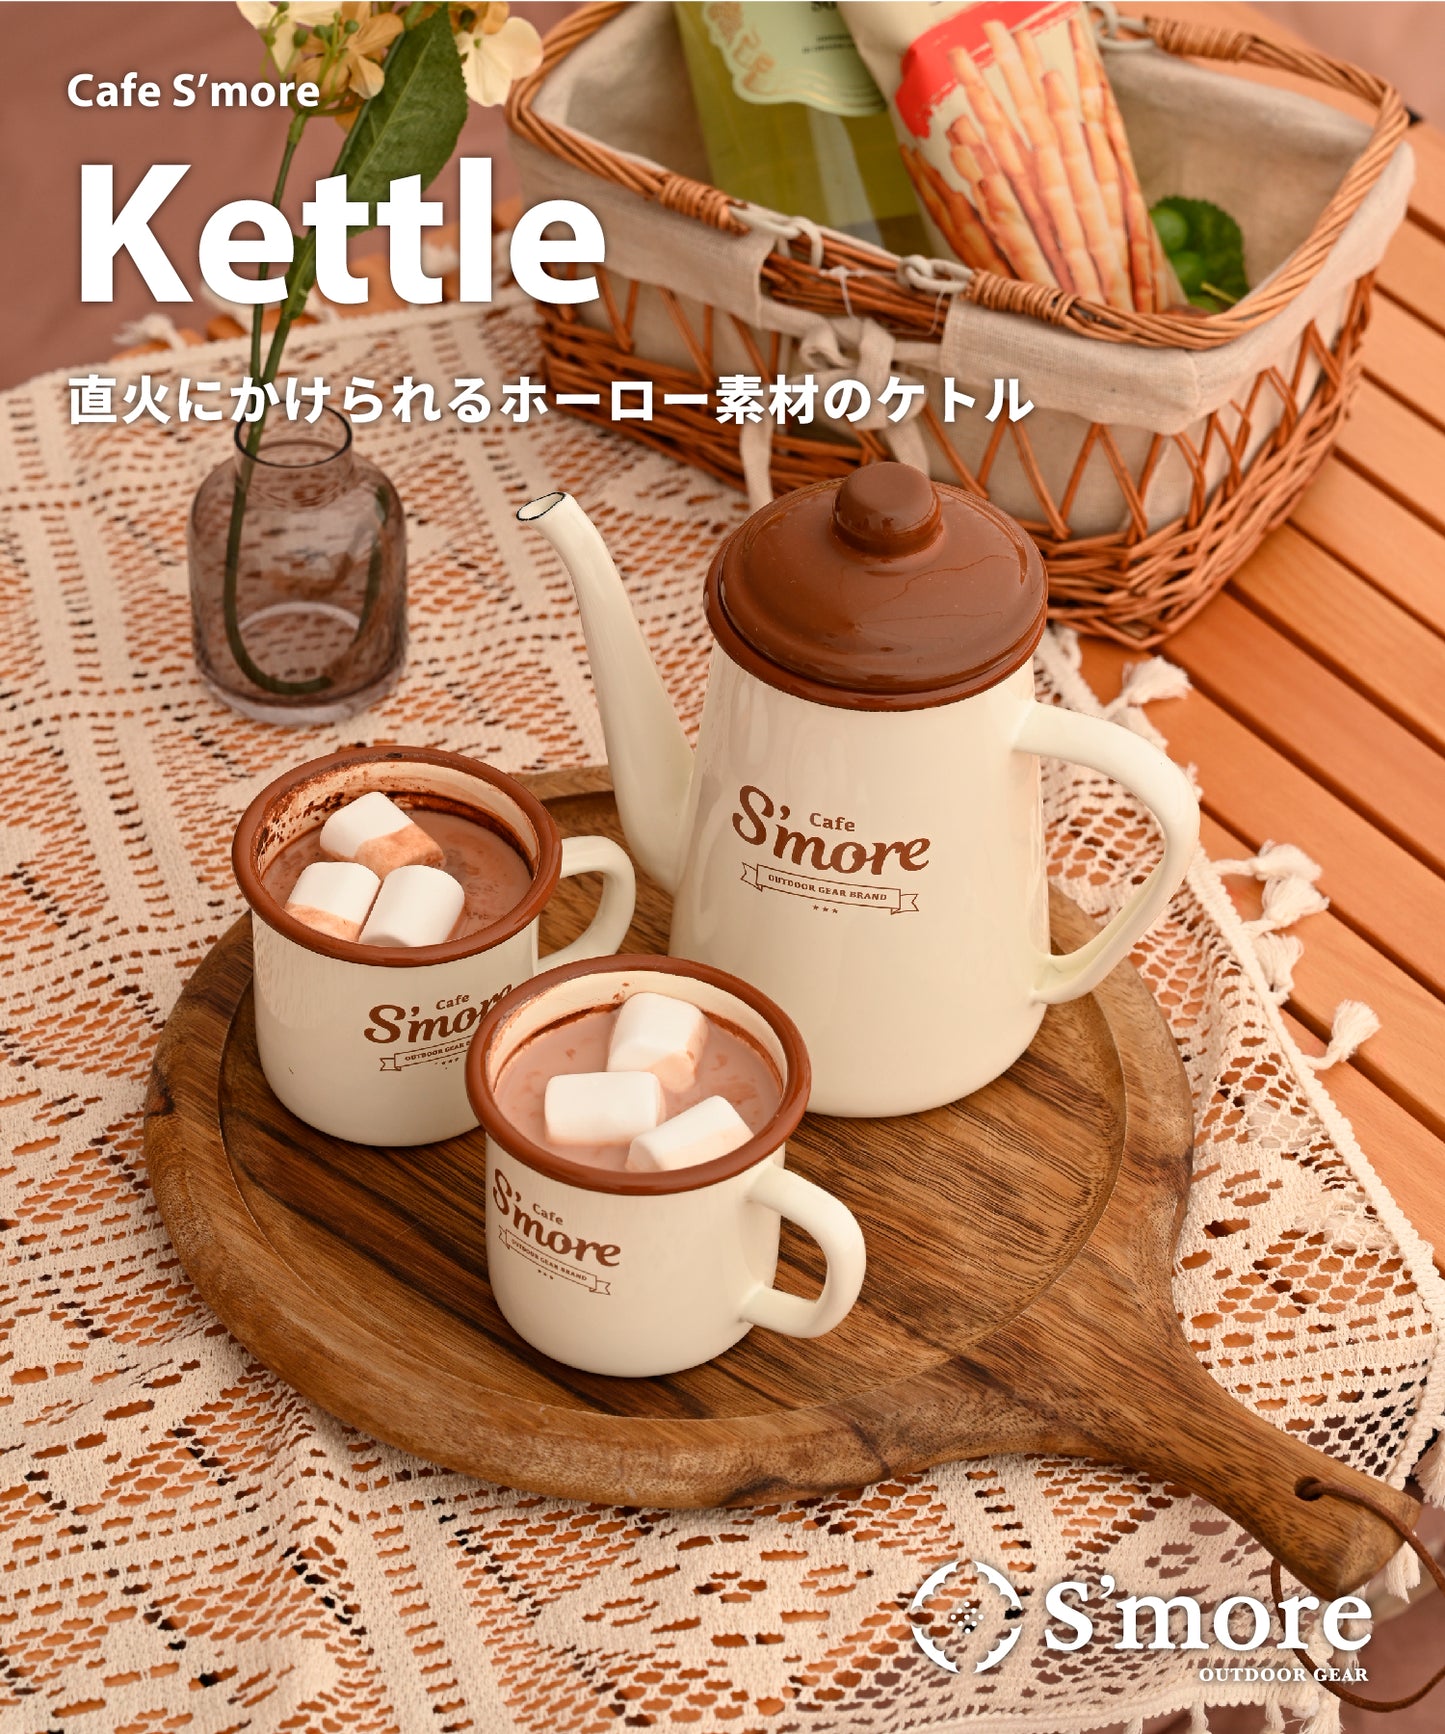 New!! café s'more kettle